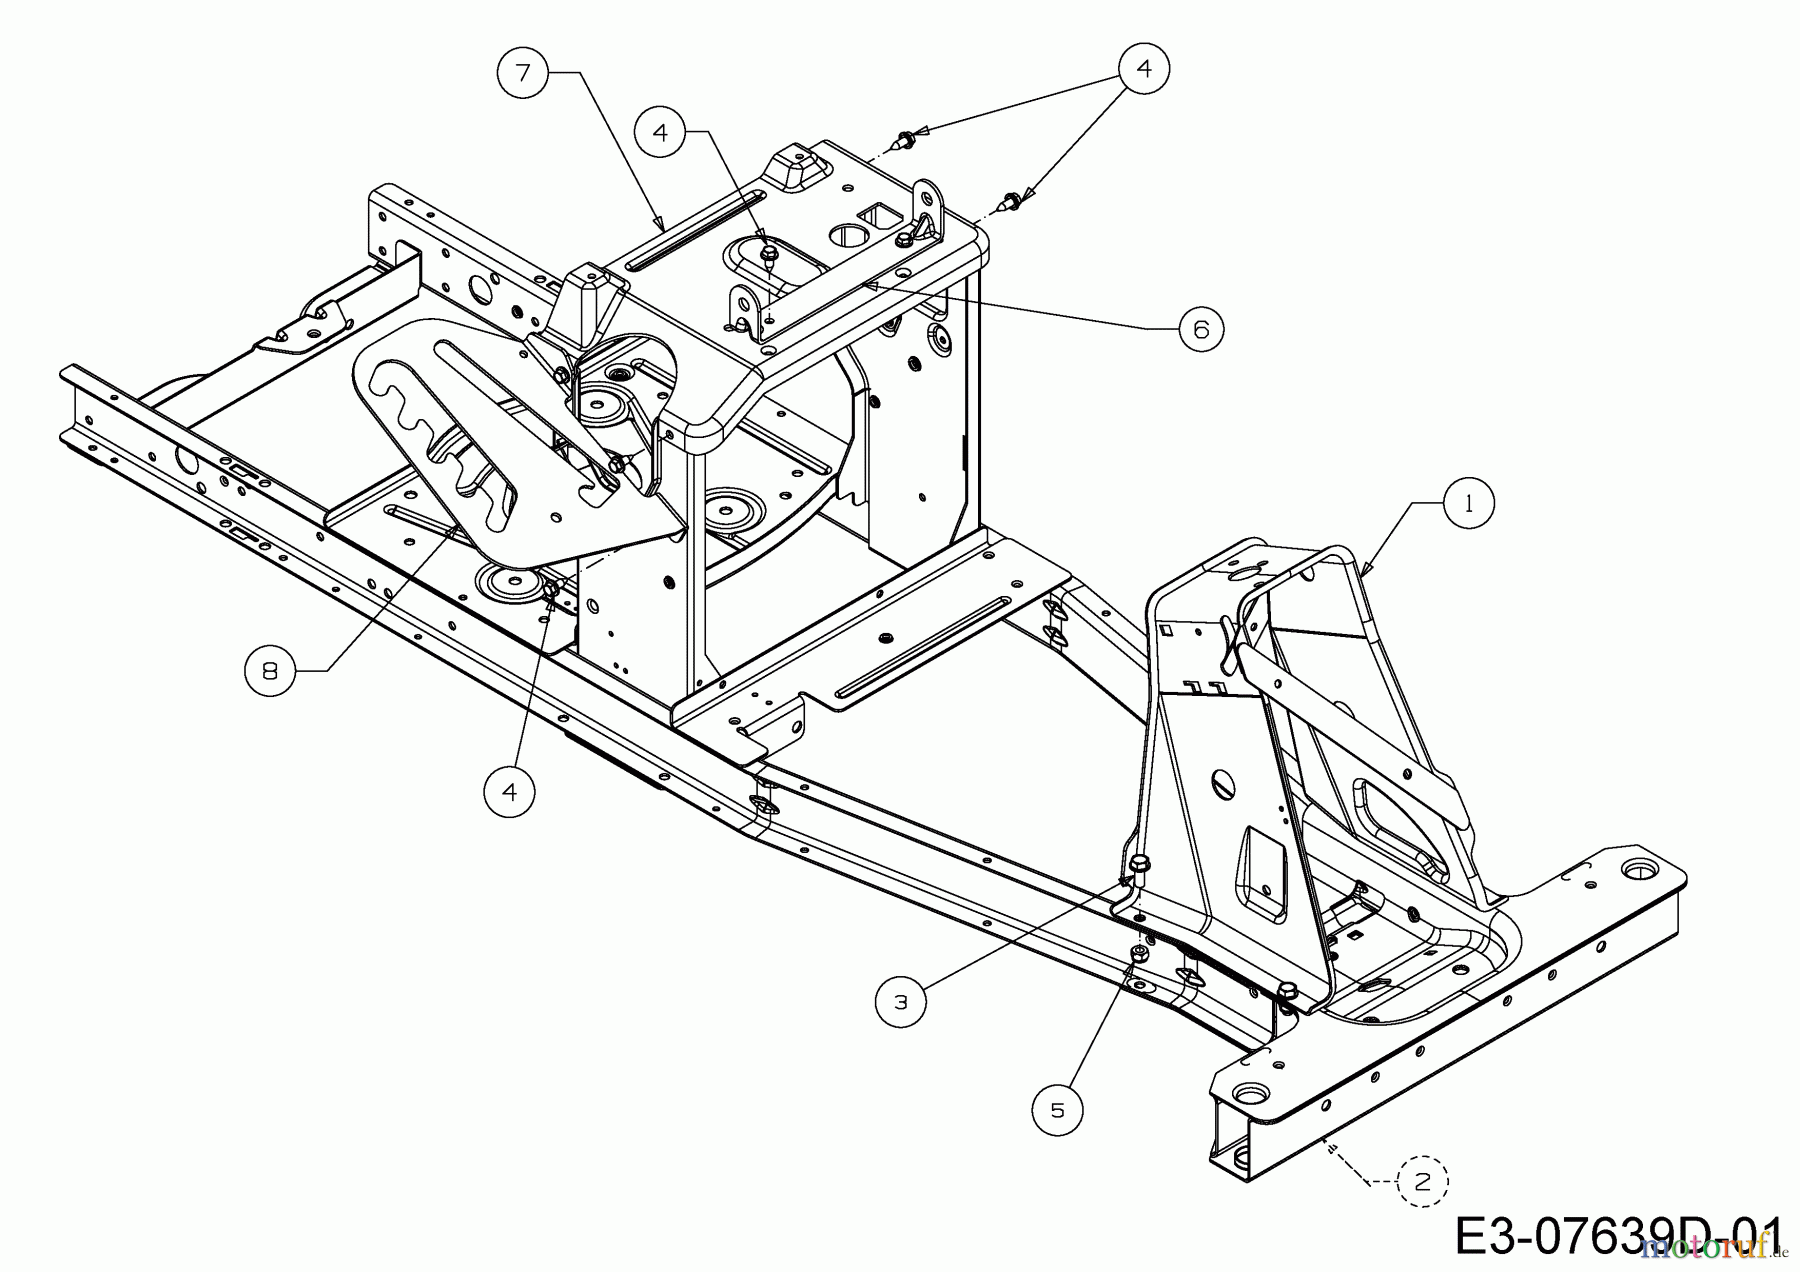  WOLF-Garten Expert Rasentraktoren Expert Scooter Pro 13B226HD650  (2017) Rahmen